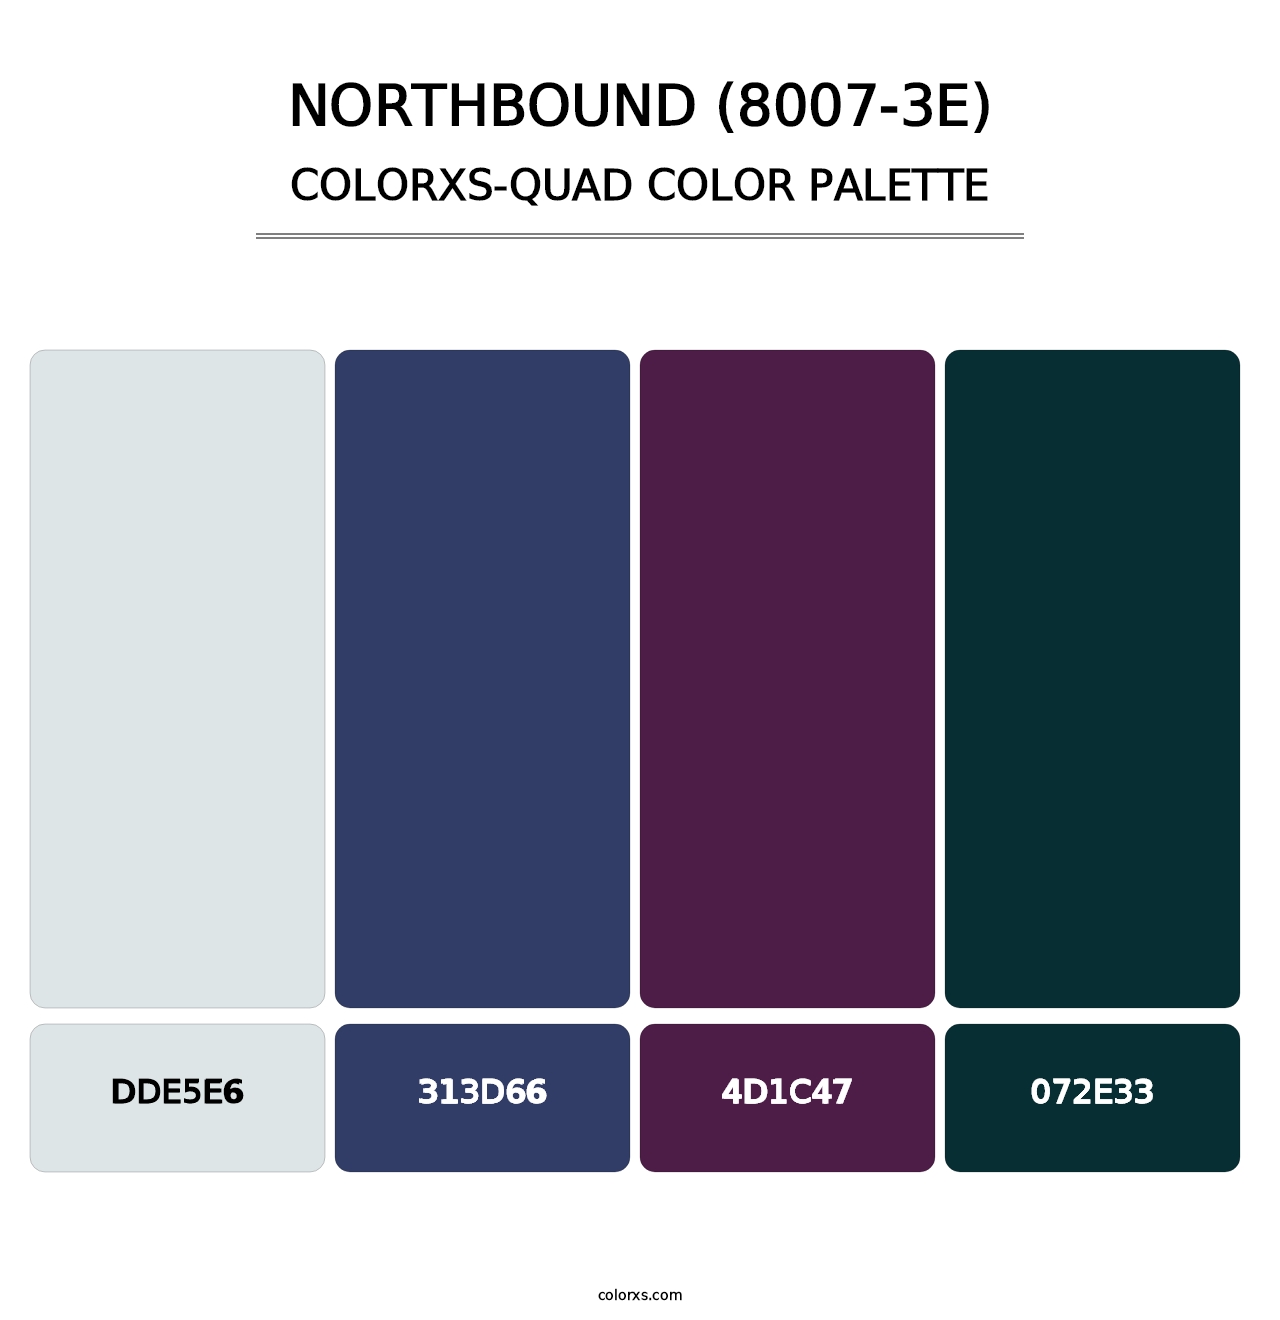 Northbound (8007-3E) - Colorxs Quad Palette